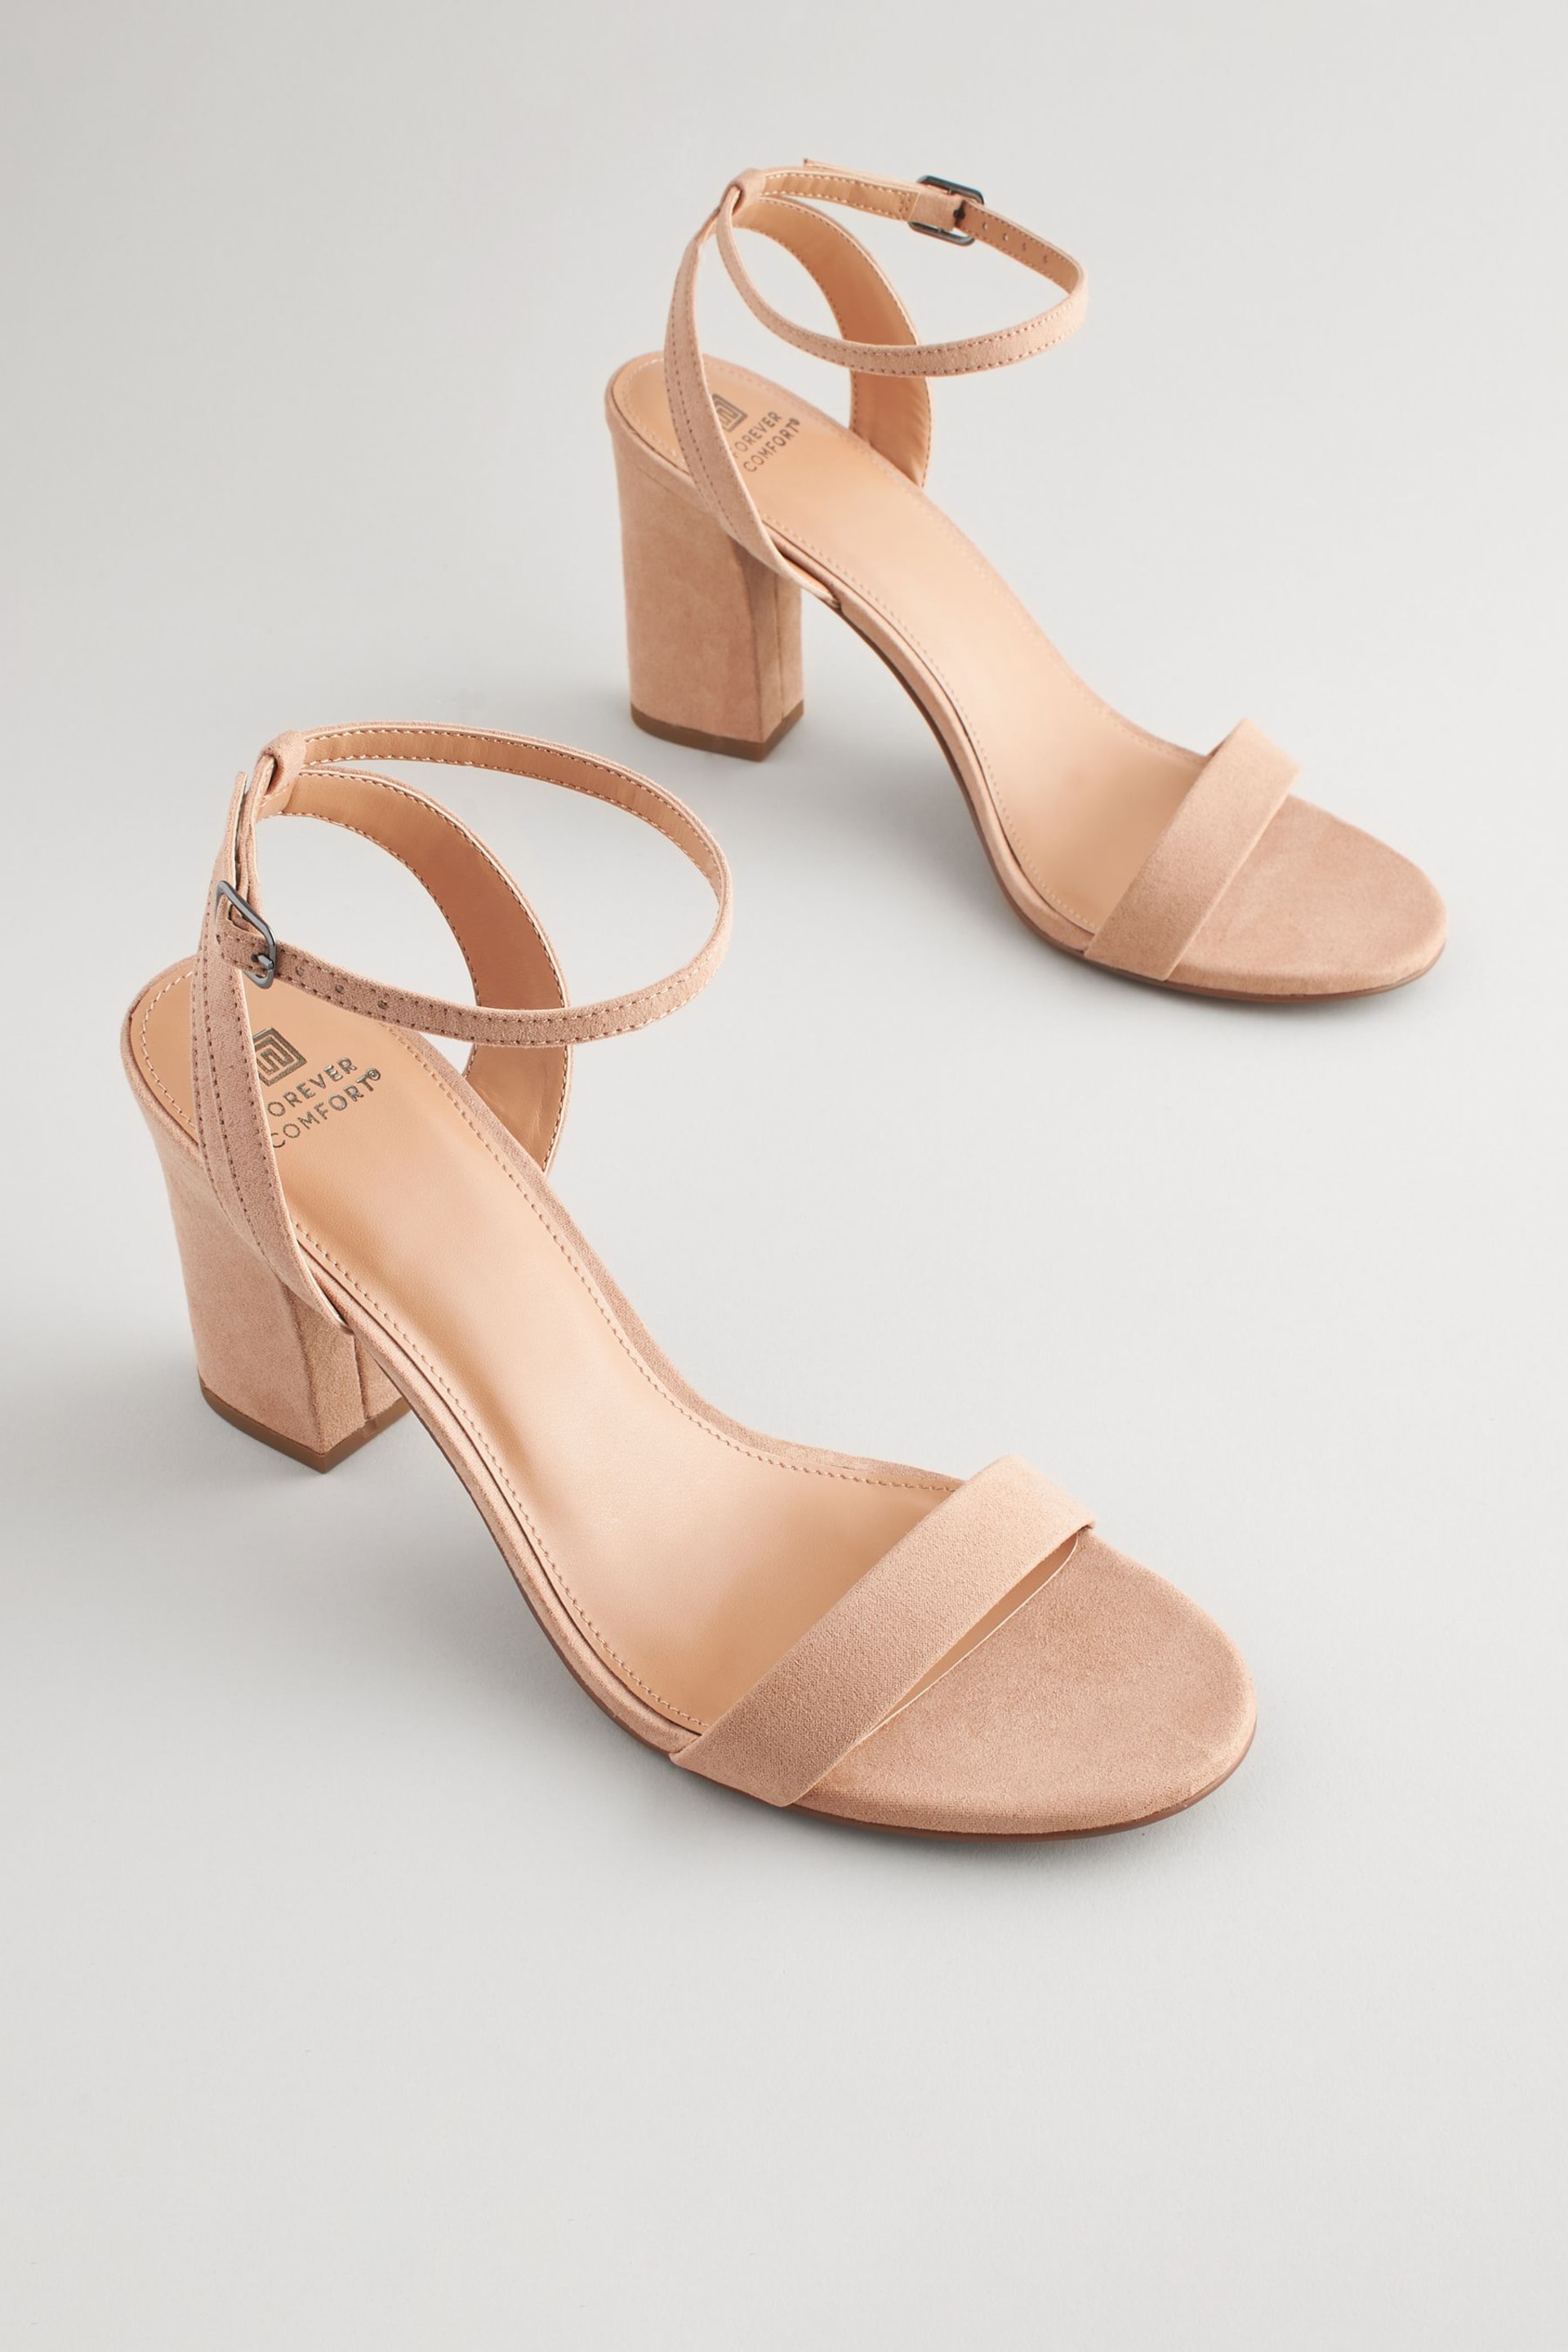 Nude Regular/Wide Fit Forever Comfort® Block Heel Sandals - Image 3 of 8